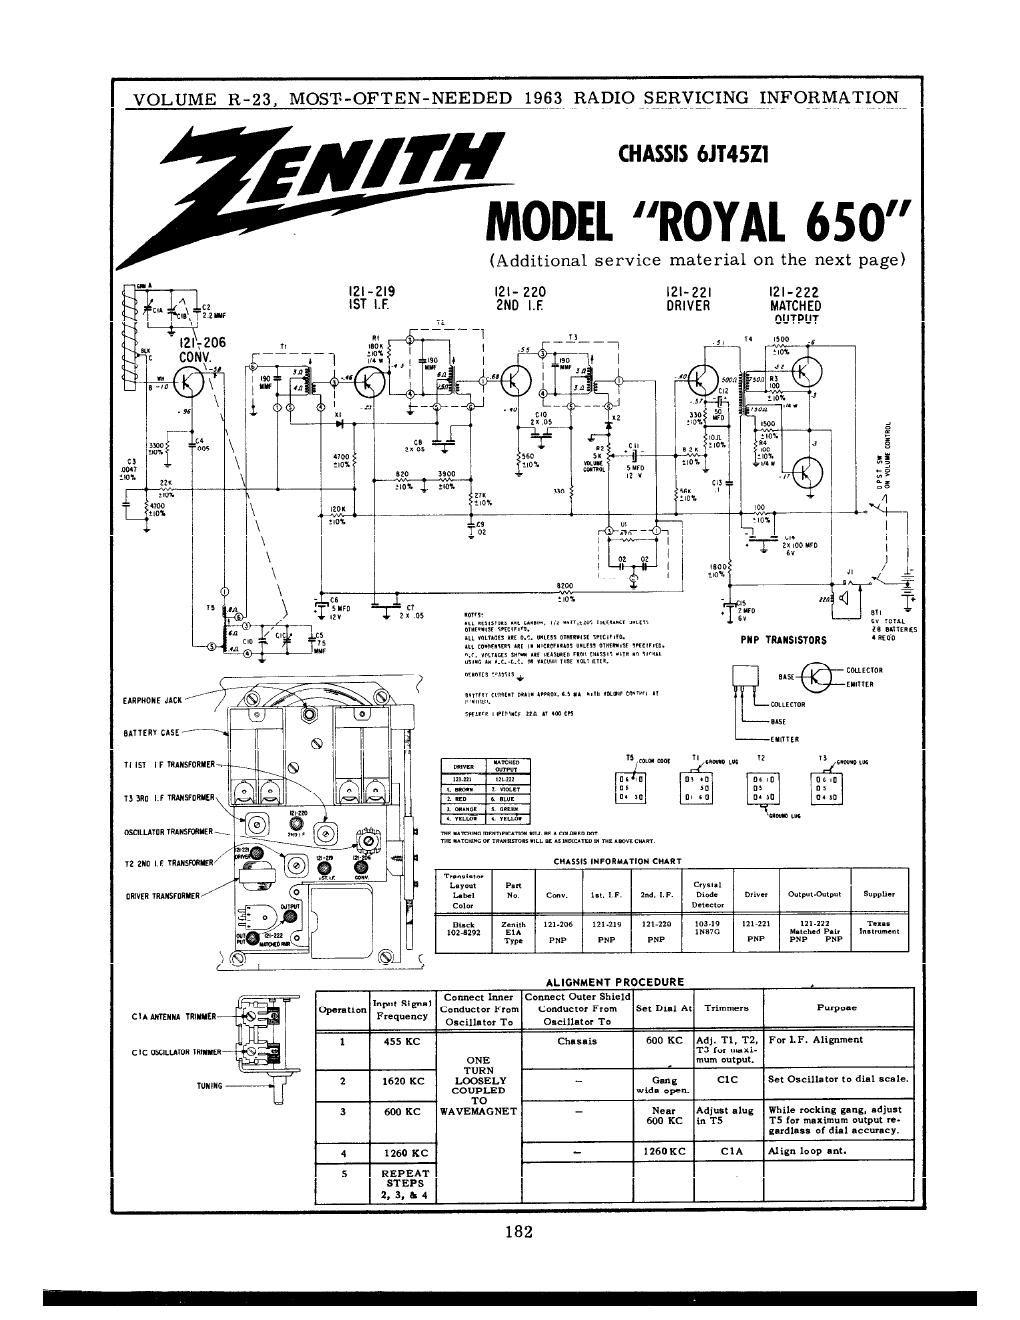 zenith royal 650